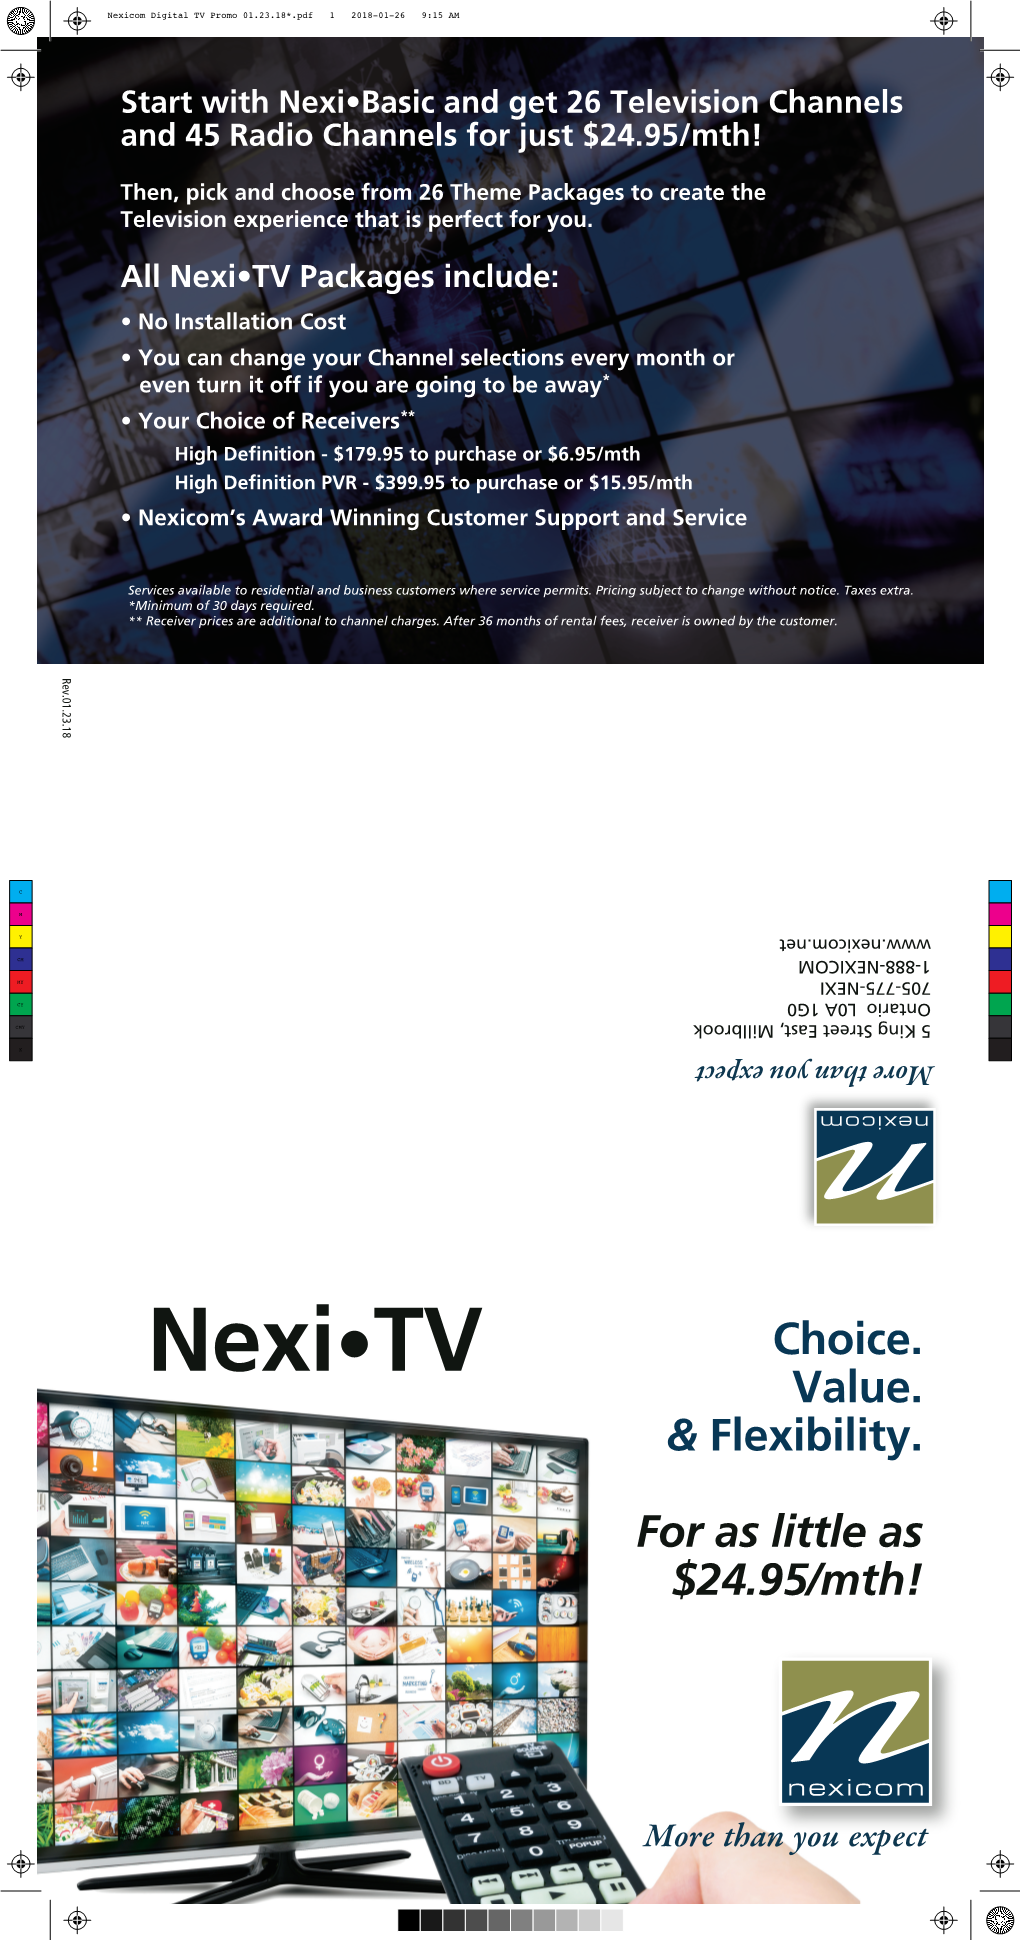 Nexicom Digital TV Promo 01.23.18*.Pdf 1 2018-01-26 9:15 AM